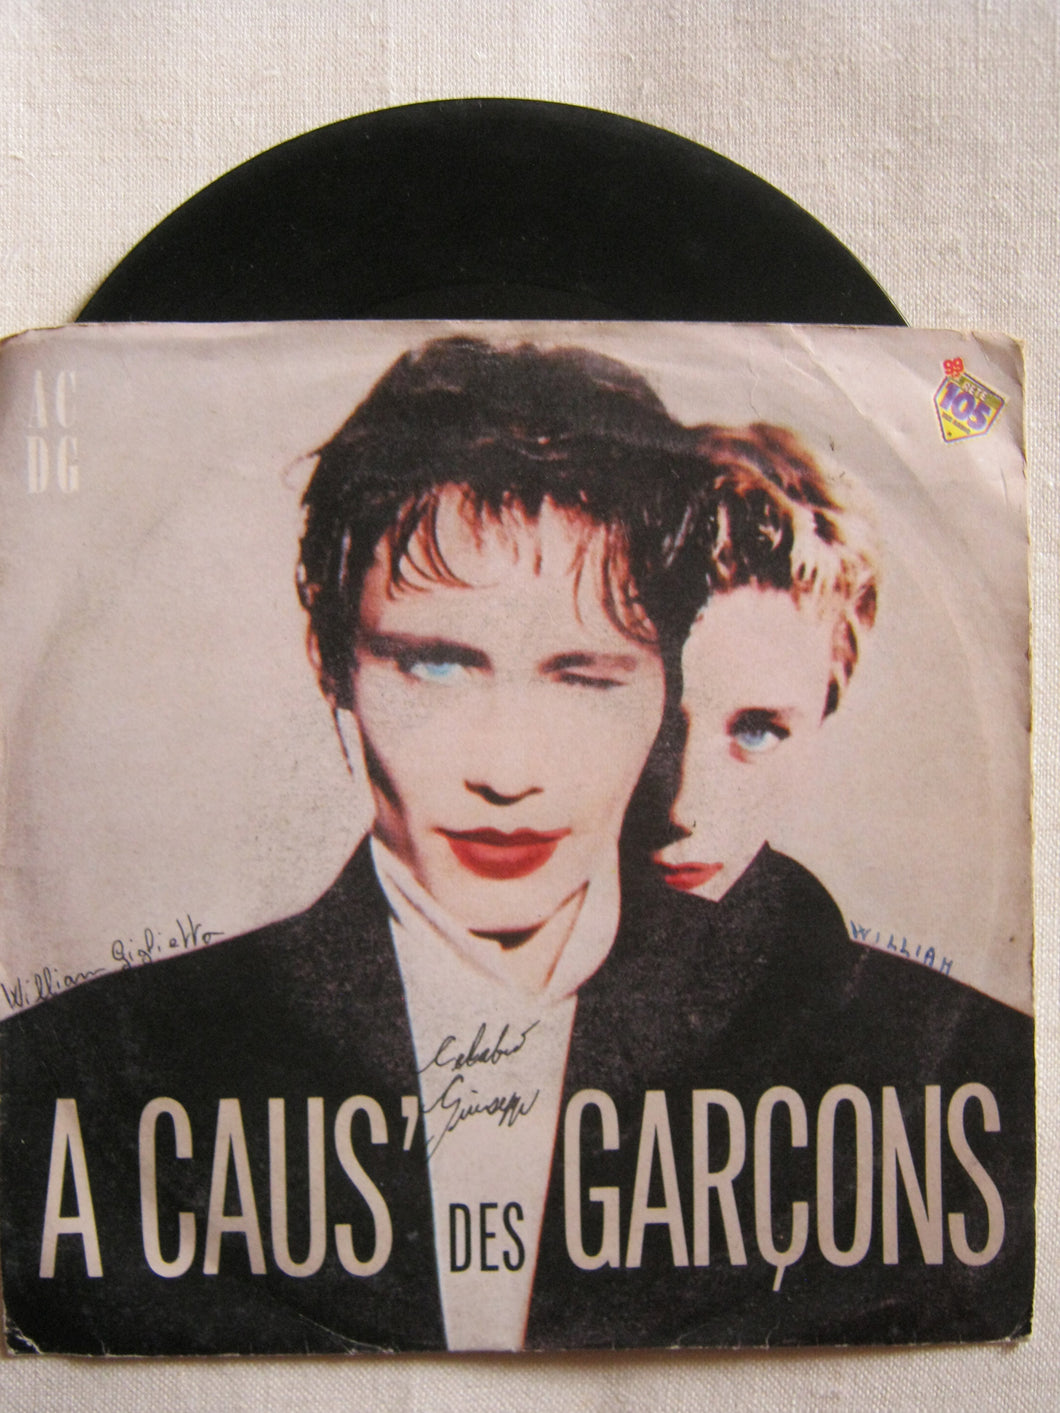 45 giri - 7'' - A Caus' Des Garcons - A Caus' Des Garcons